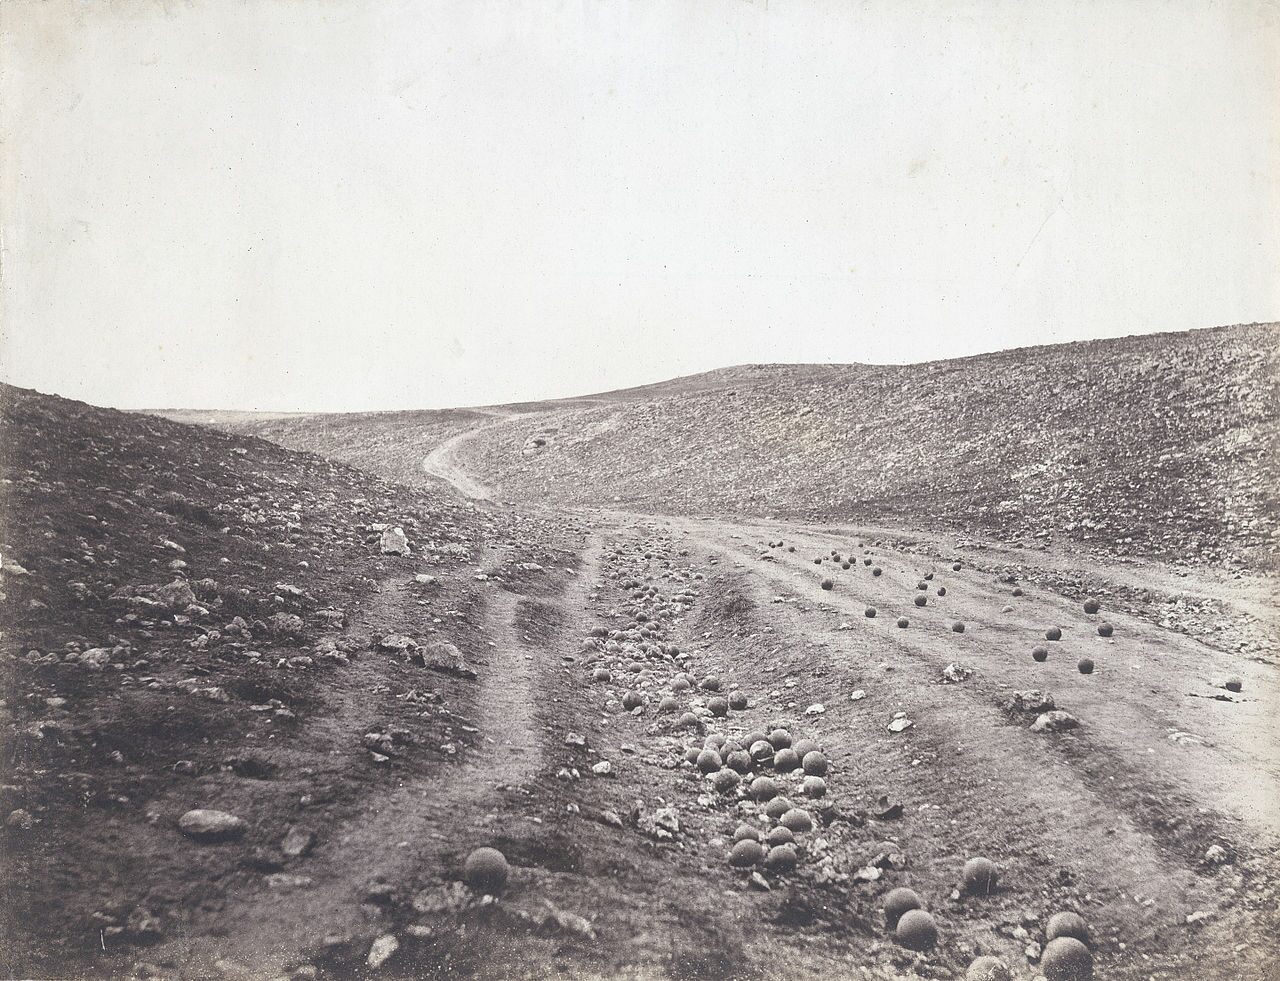 ภาพถ่าย The valley of the shadow of death ถ่ายโดย Roger Fenton ภาพที่มีชื่อเสียงที่สุด ของ สงครามไครเมีย